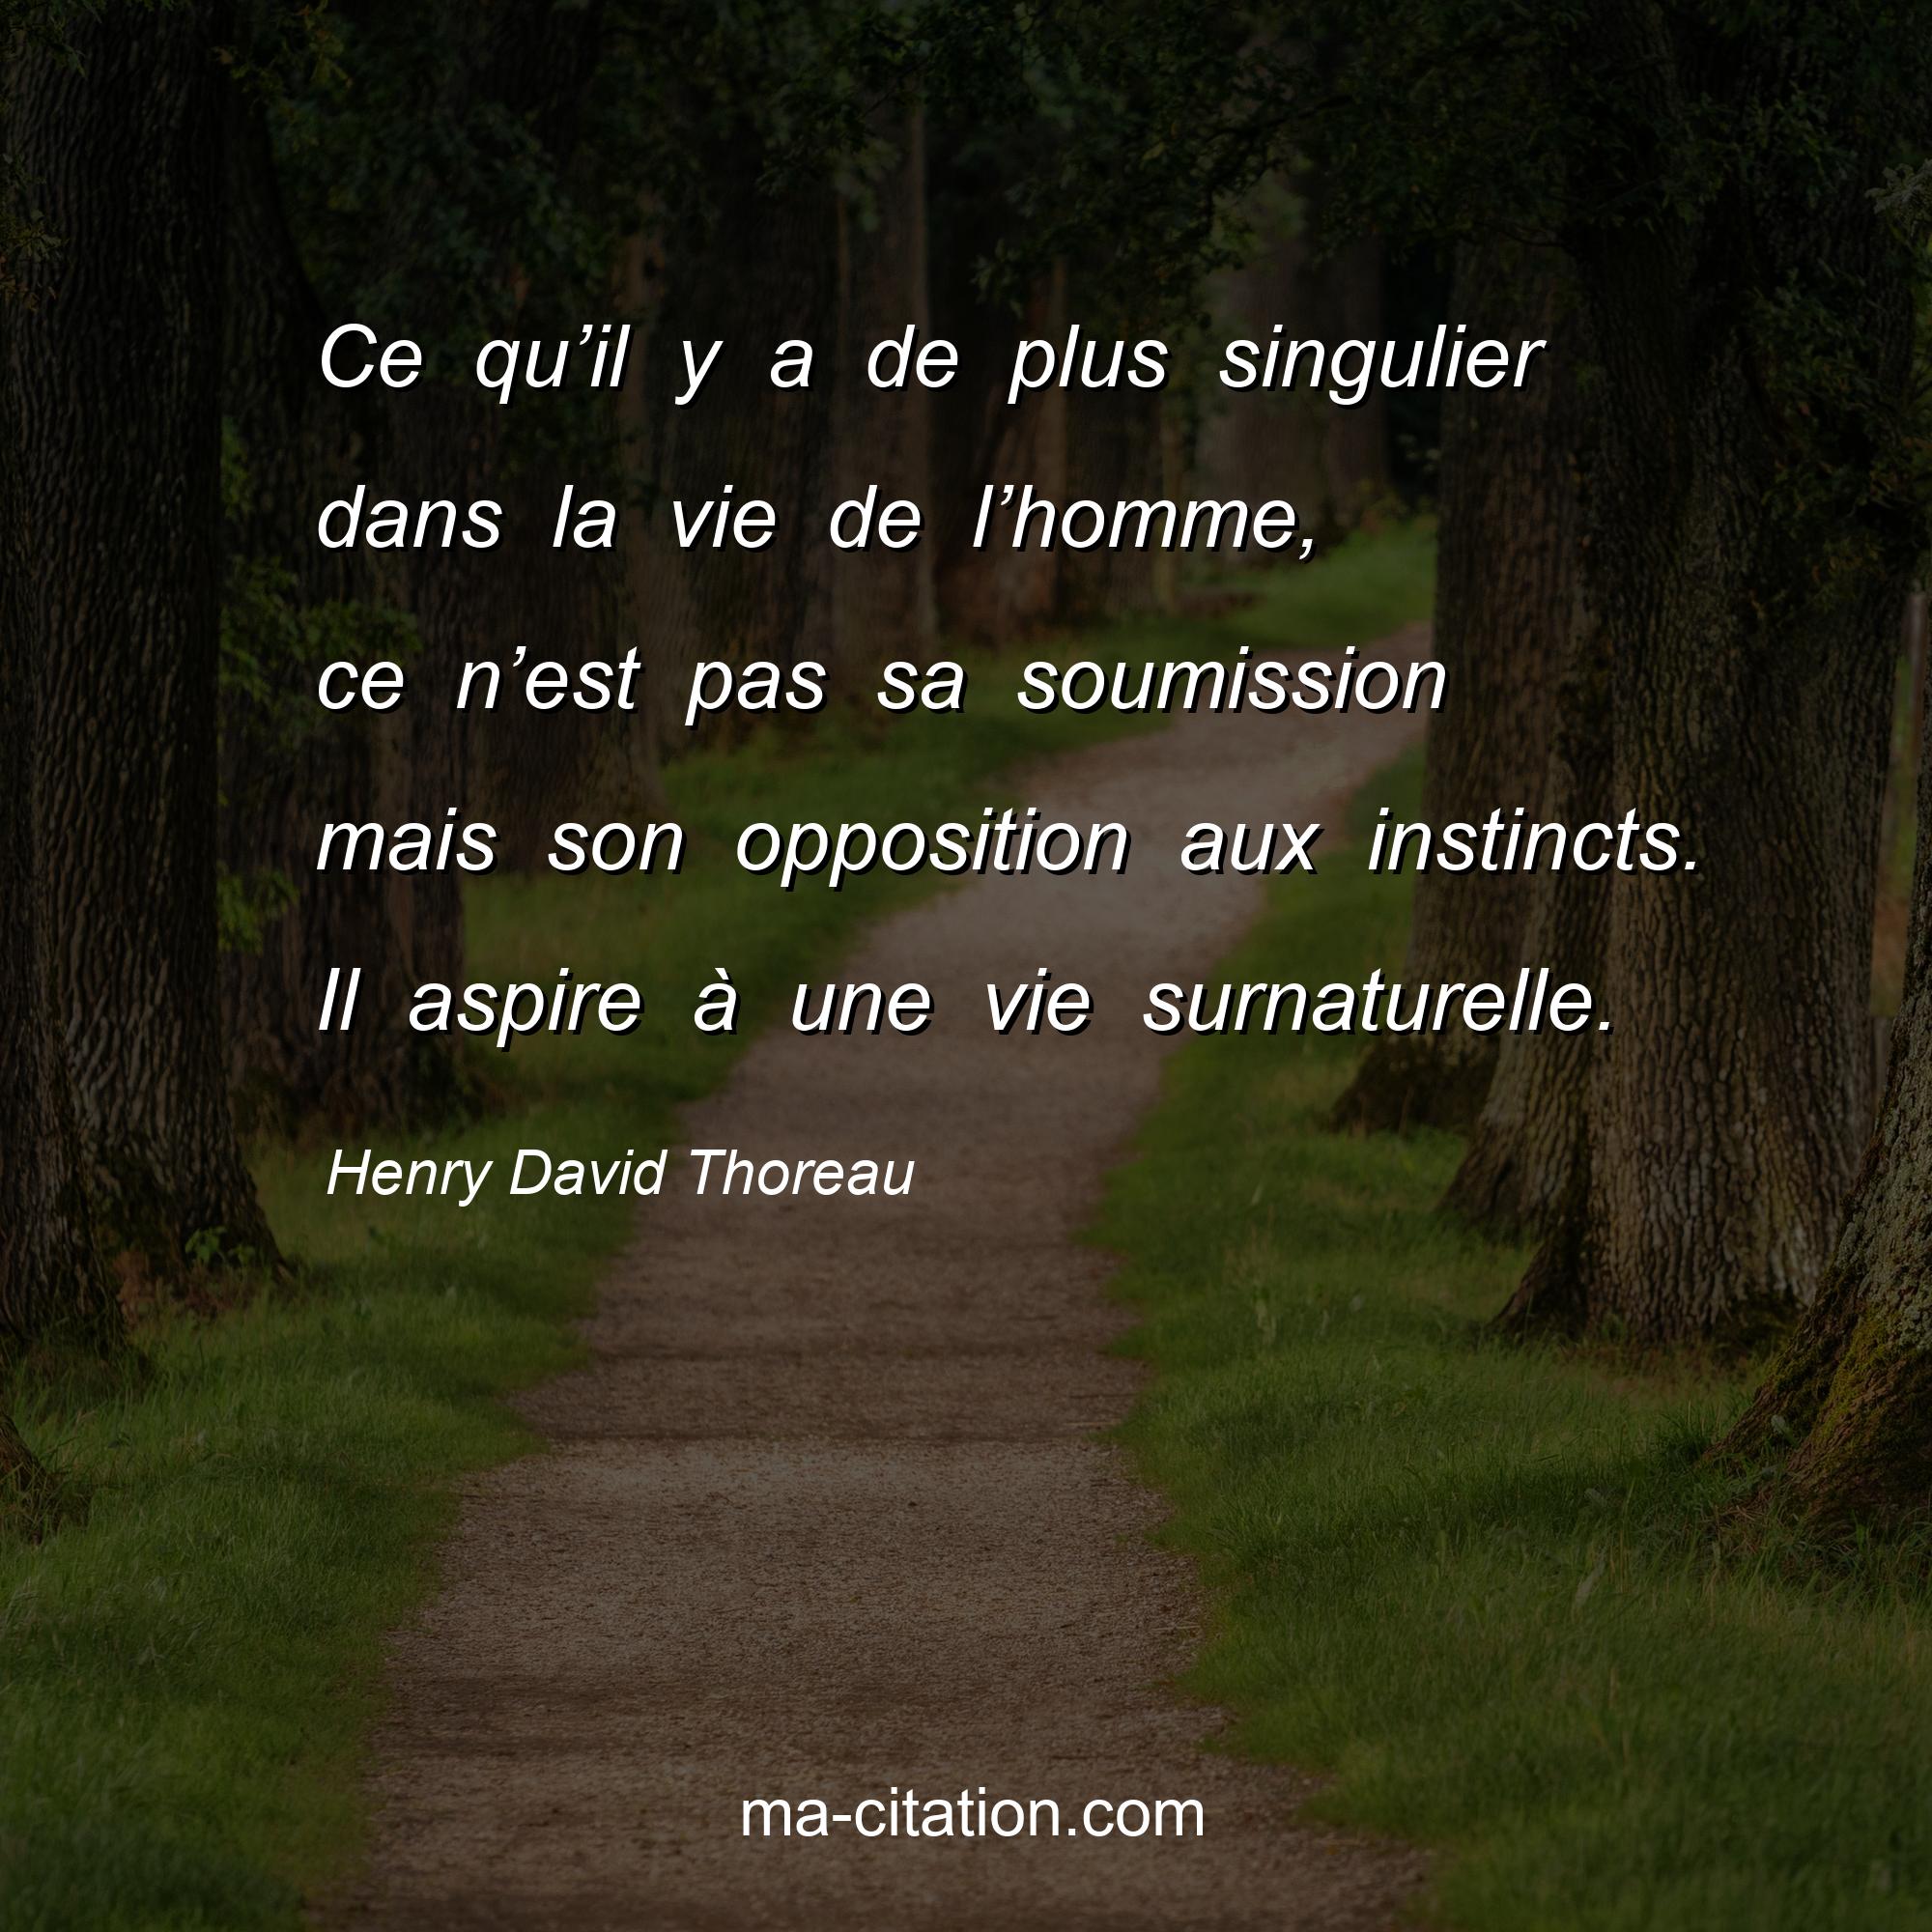 Henry David Thoreau : Ce qu’il y a de plus singulier dans la vie de l’homme, ce n’est pas sa soumission mais son opposition aux instincts. Il aspire à une vie surnaturelle.